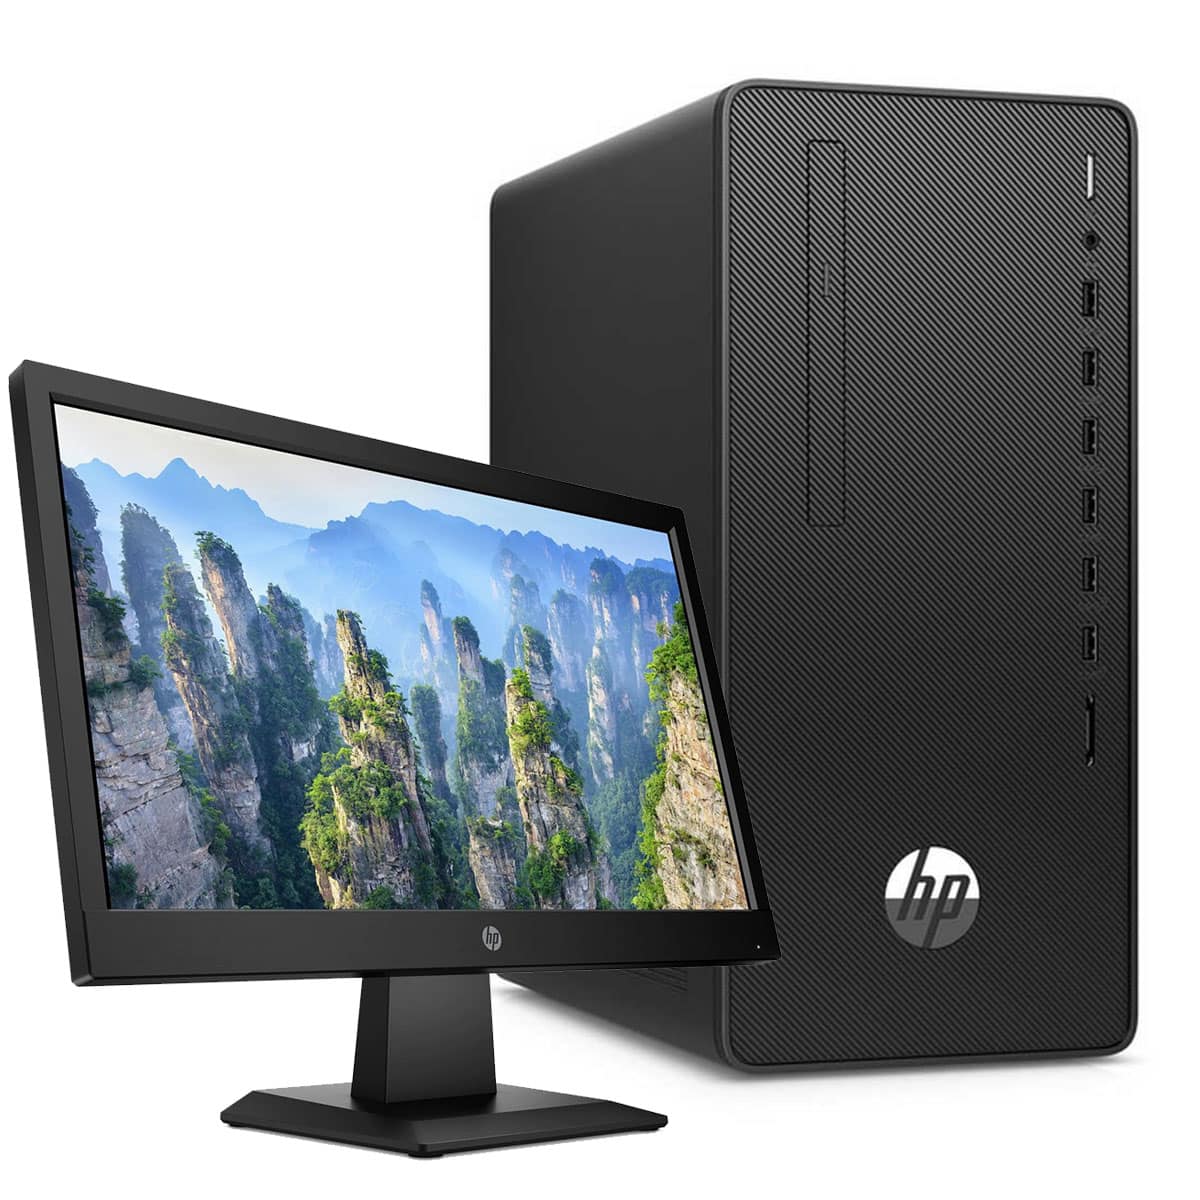 HP 290 G4 i7 10th Gen 8GB 1TB HDD + 22" Monitor